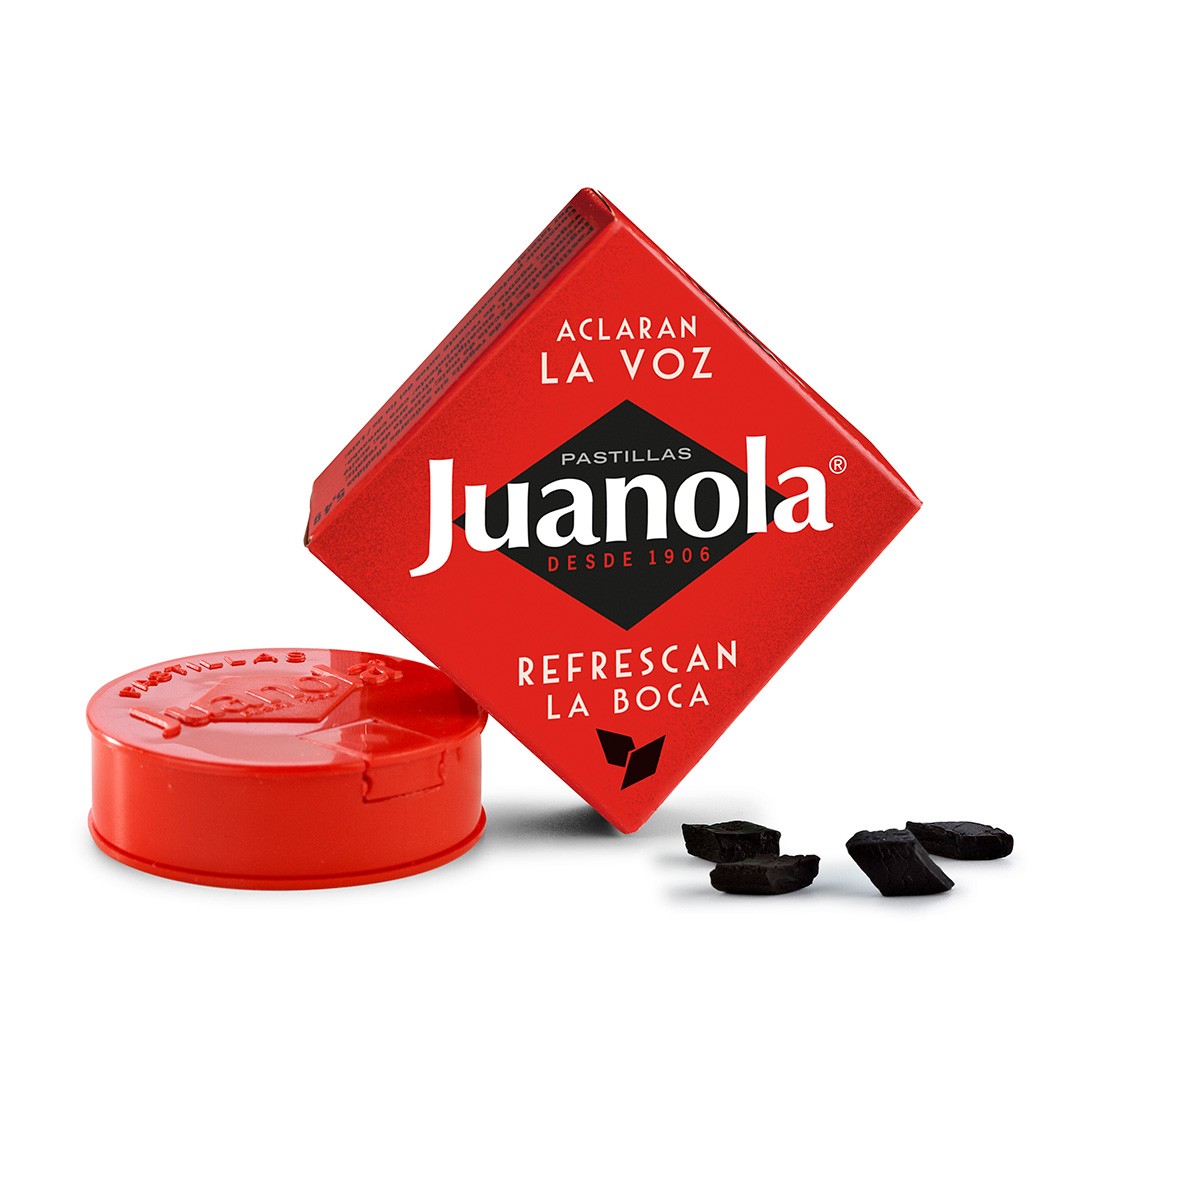 Juanola pastillas 6 gr